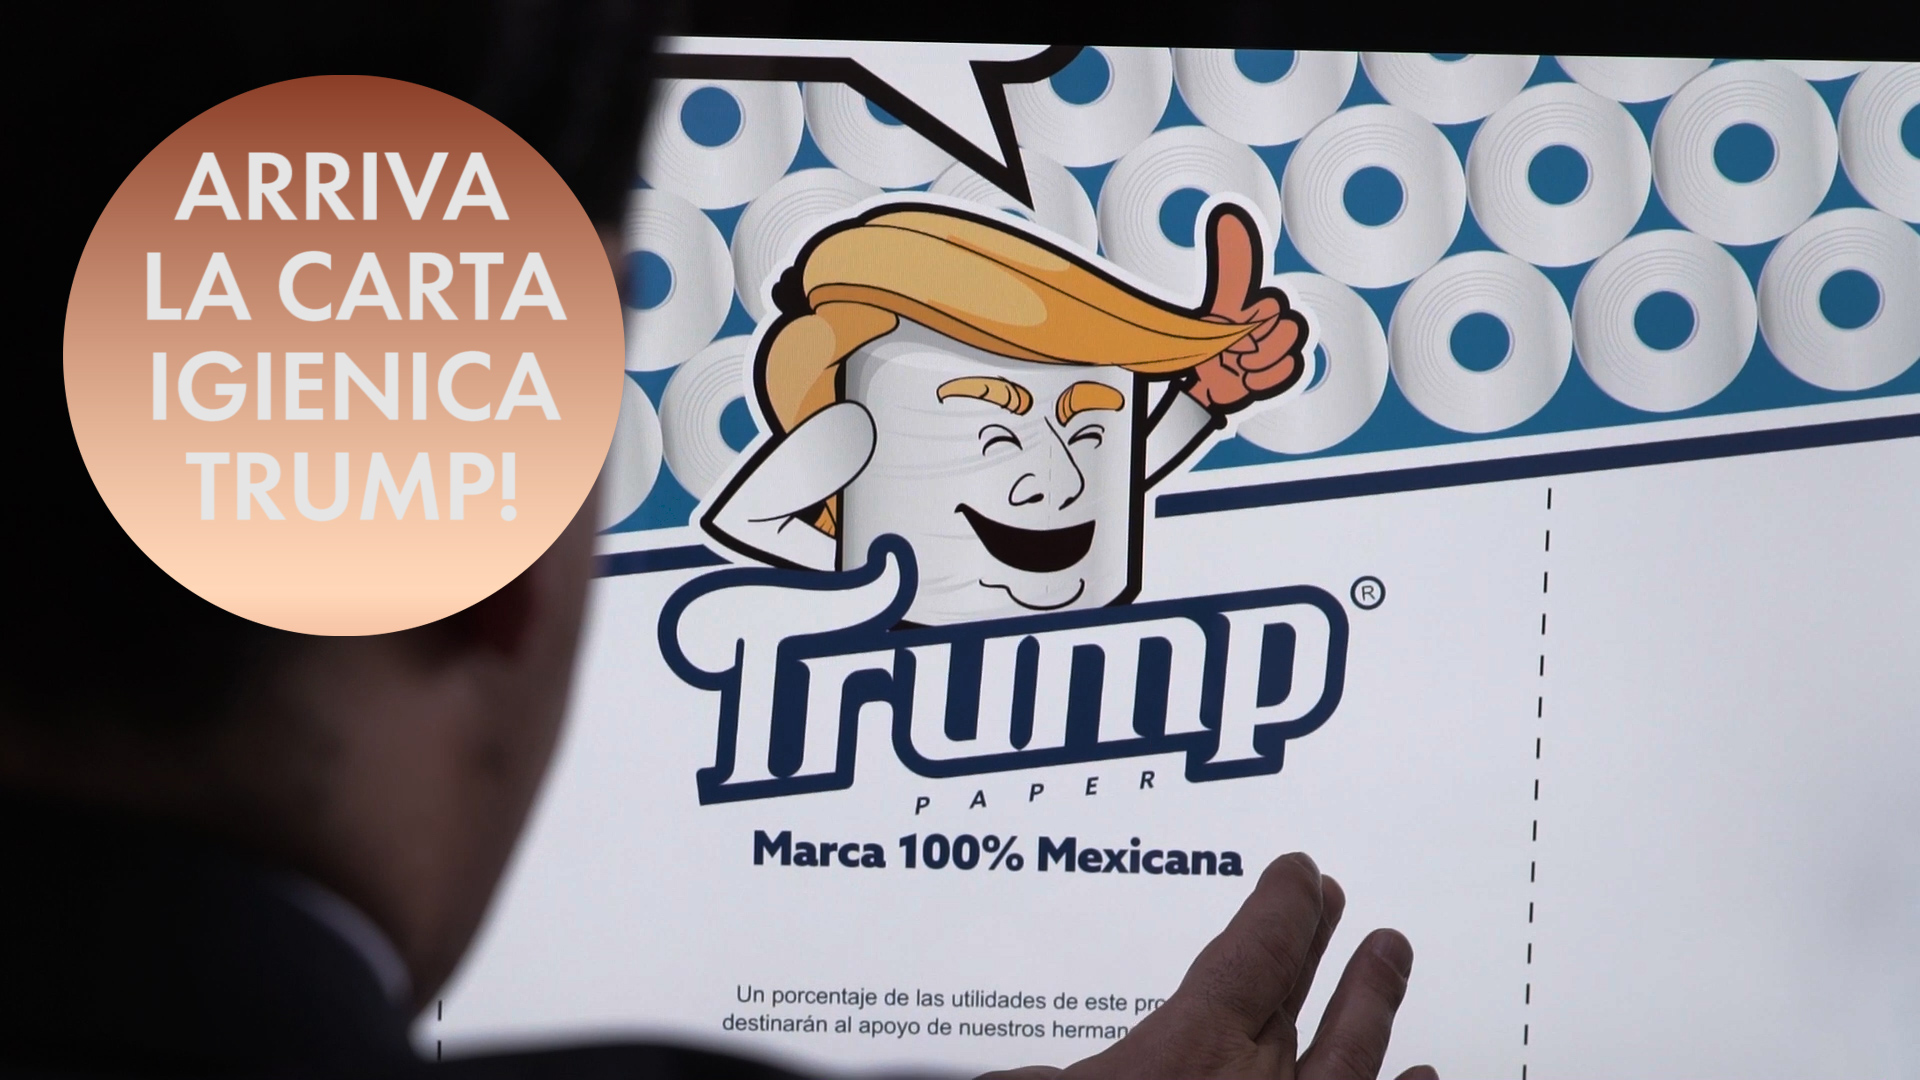 Carta igienica 'Trump': un'idea per una buona causa